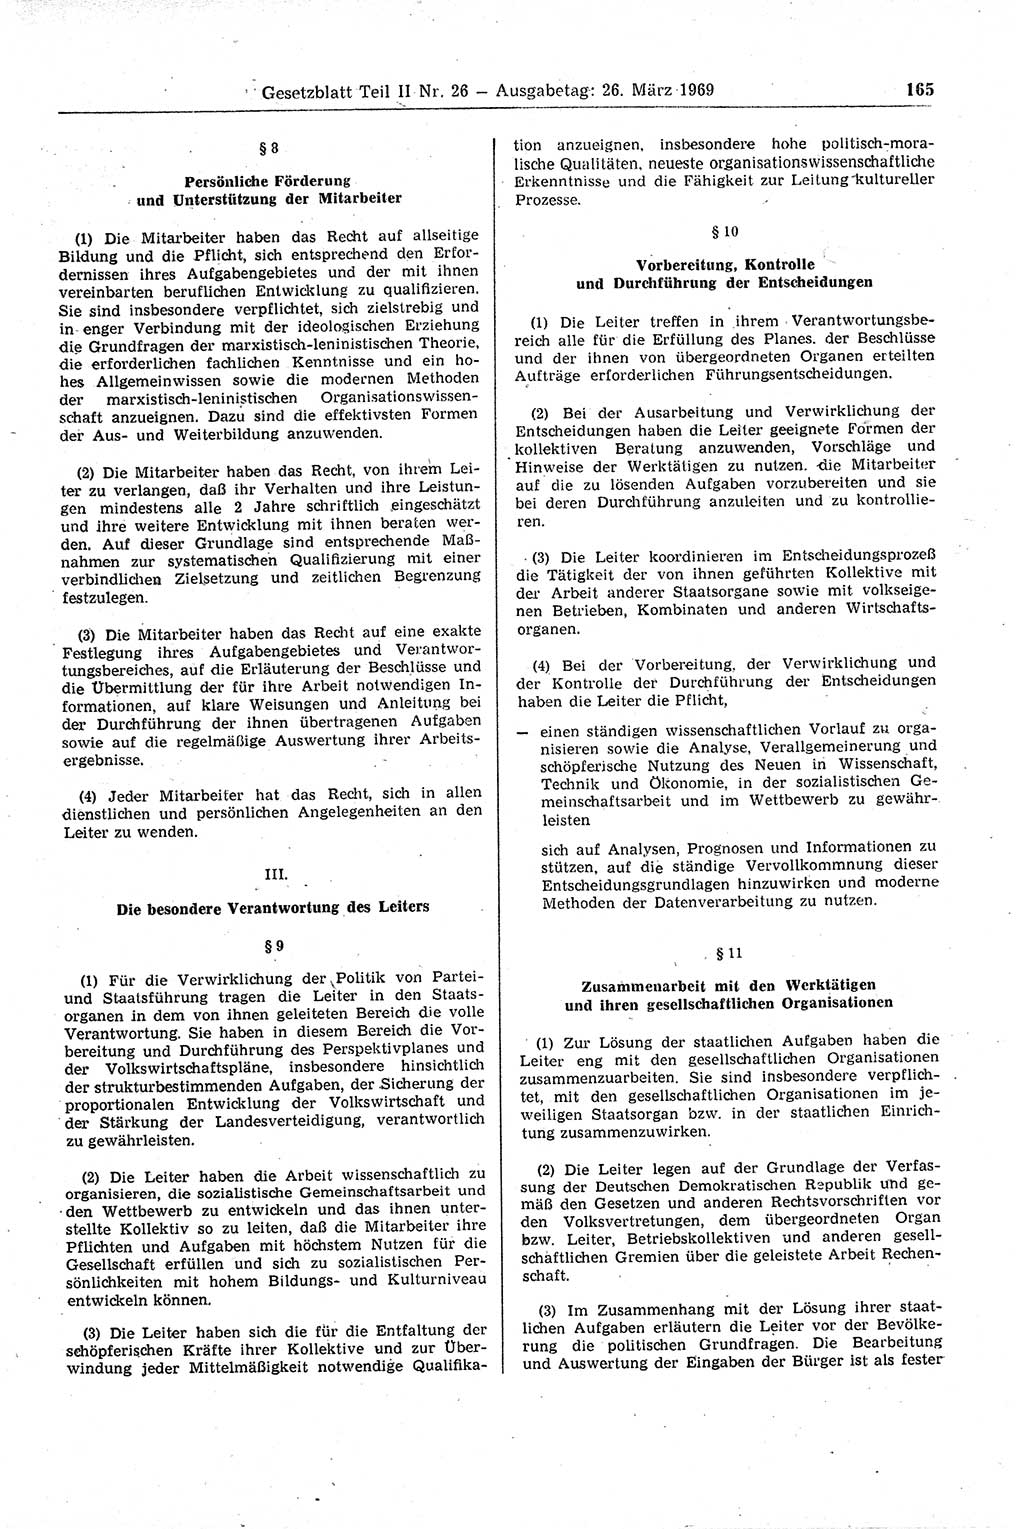 Gesetzblatt (GBl.) der Deutschen Demokratischen Republik (DDR) Teil ⅠⅠ 1969, Seite 165 (GBl. DDR ⅠⅠ 1969, S. 165)